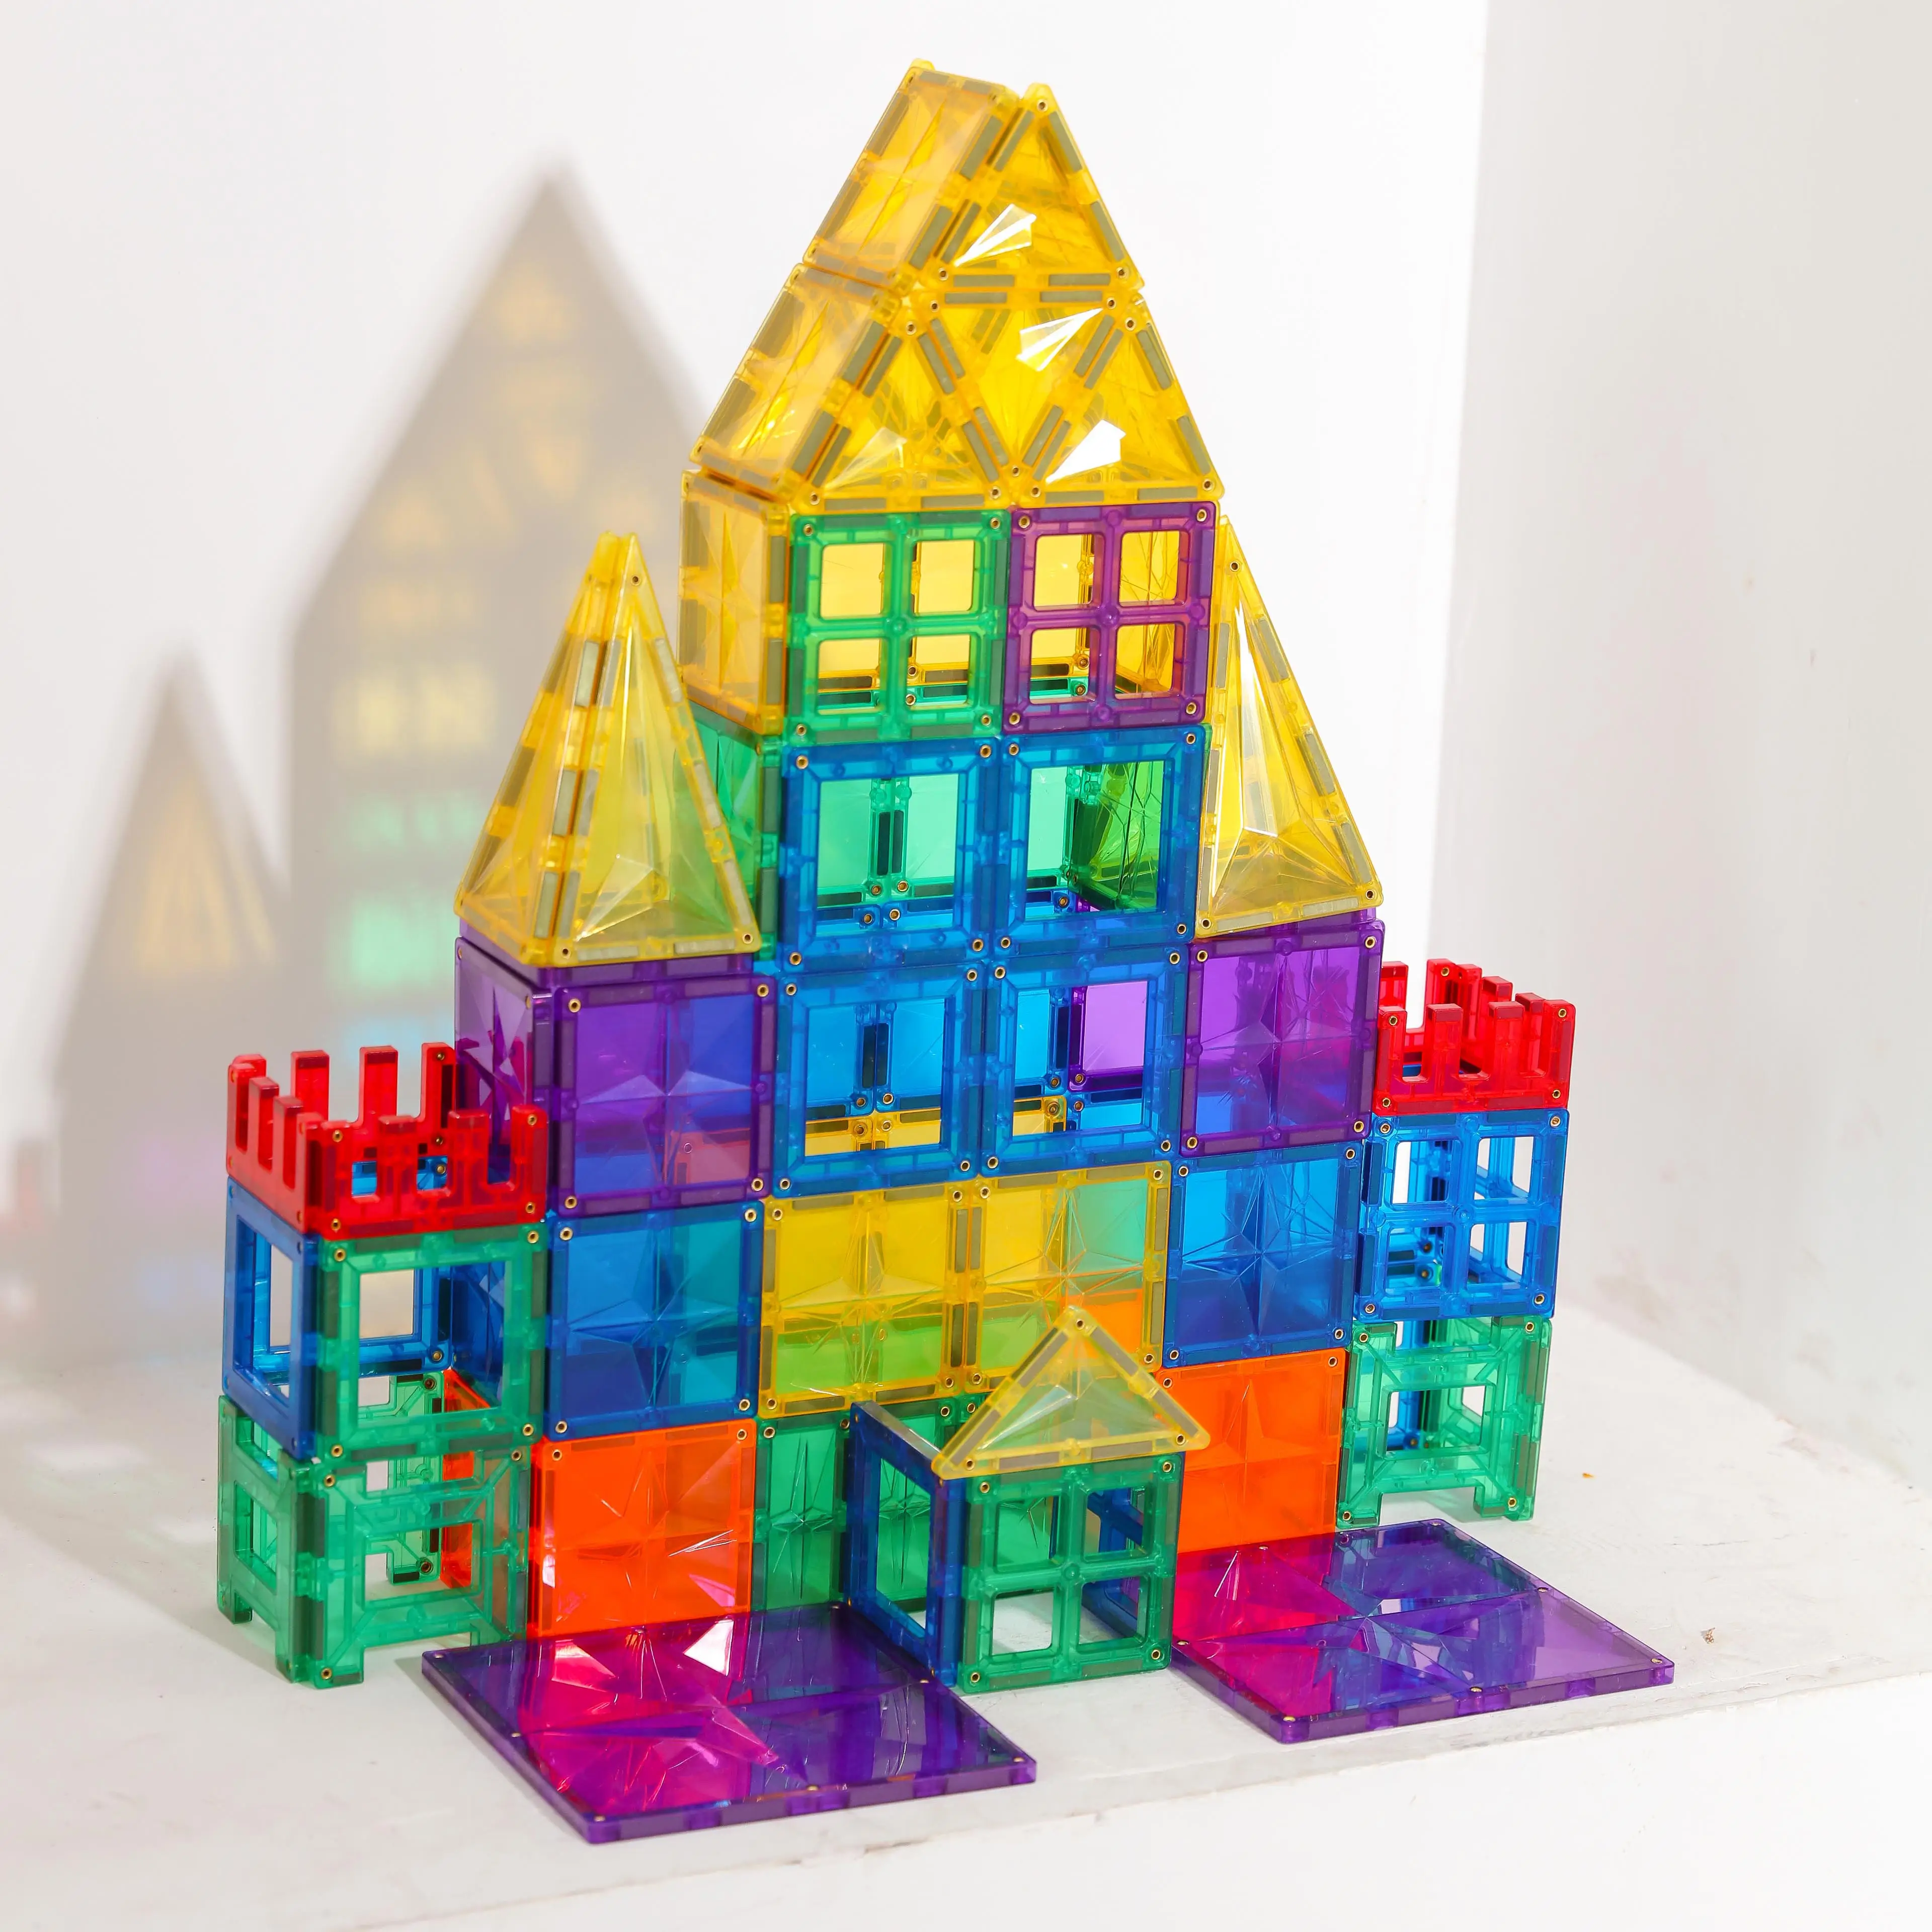 Mwntl-ensemble de blocs de Construction magnétiques créatifs, Kit de Construction éducative préscolaire, 120 pièces